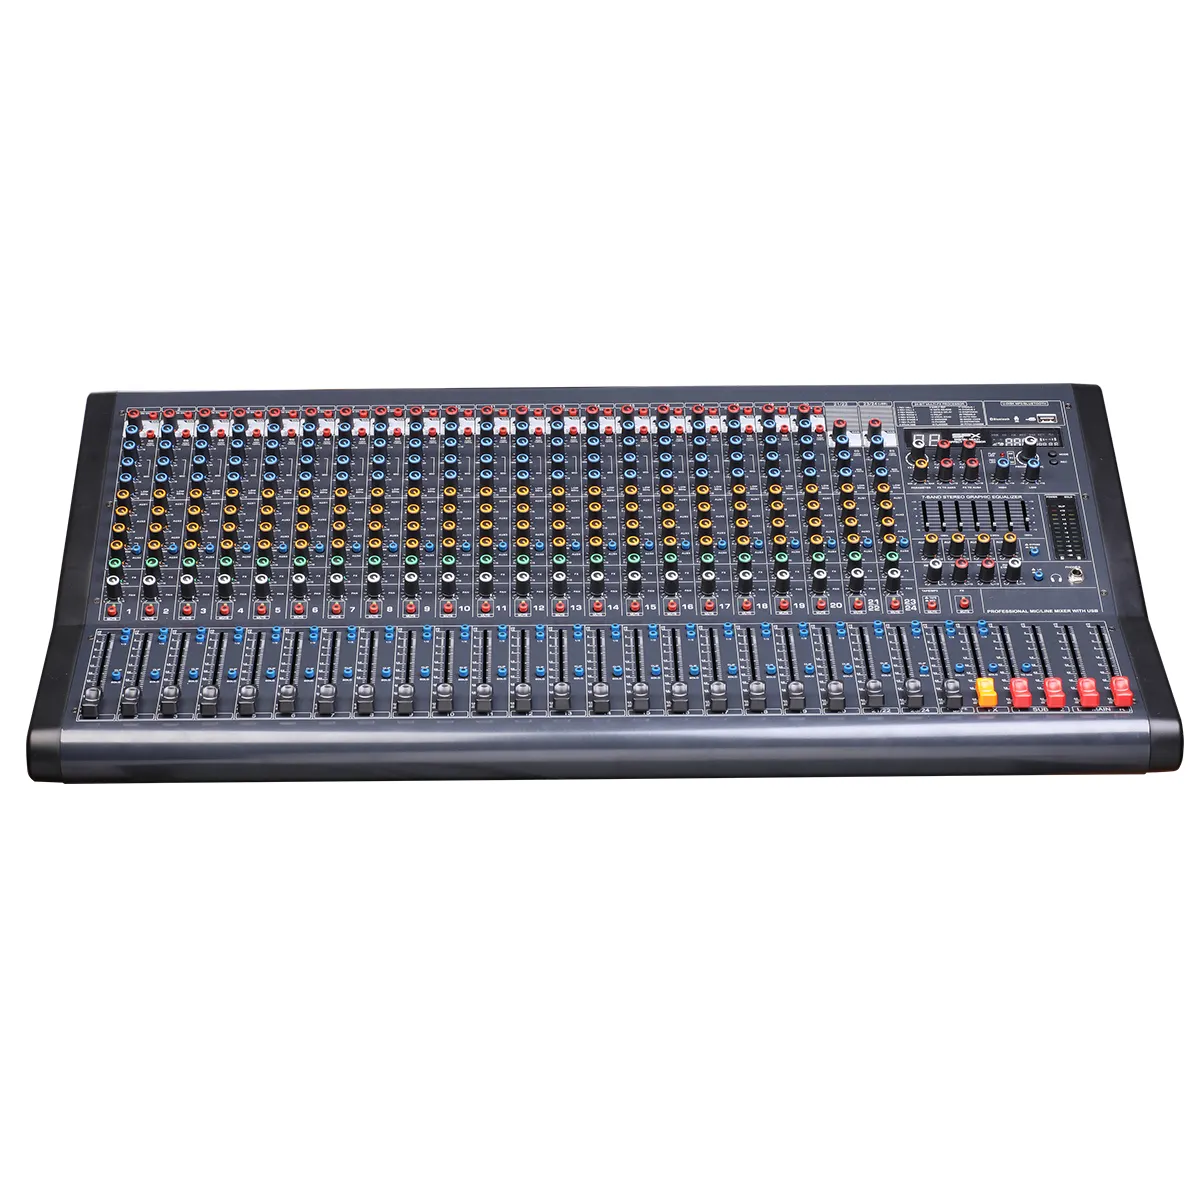 Système de sonorisation console de mixage audio contrôleur dj mélangeur professionnel 22 canaux